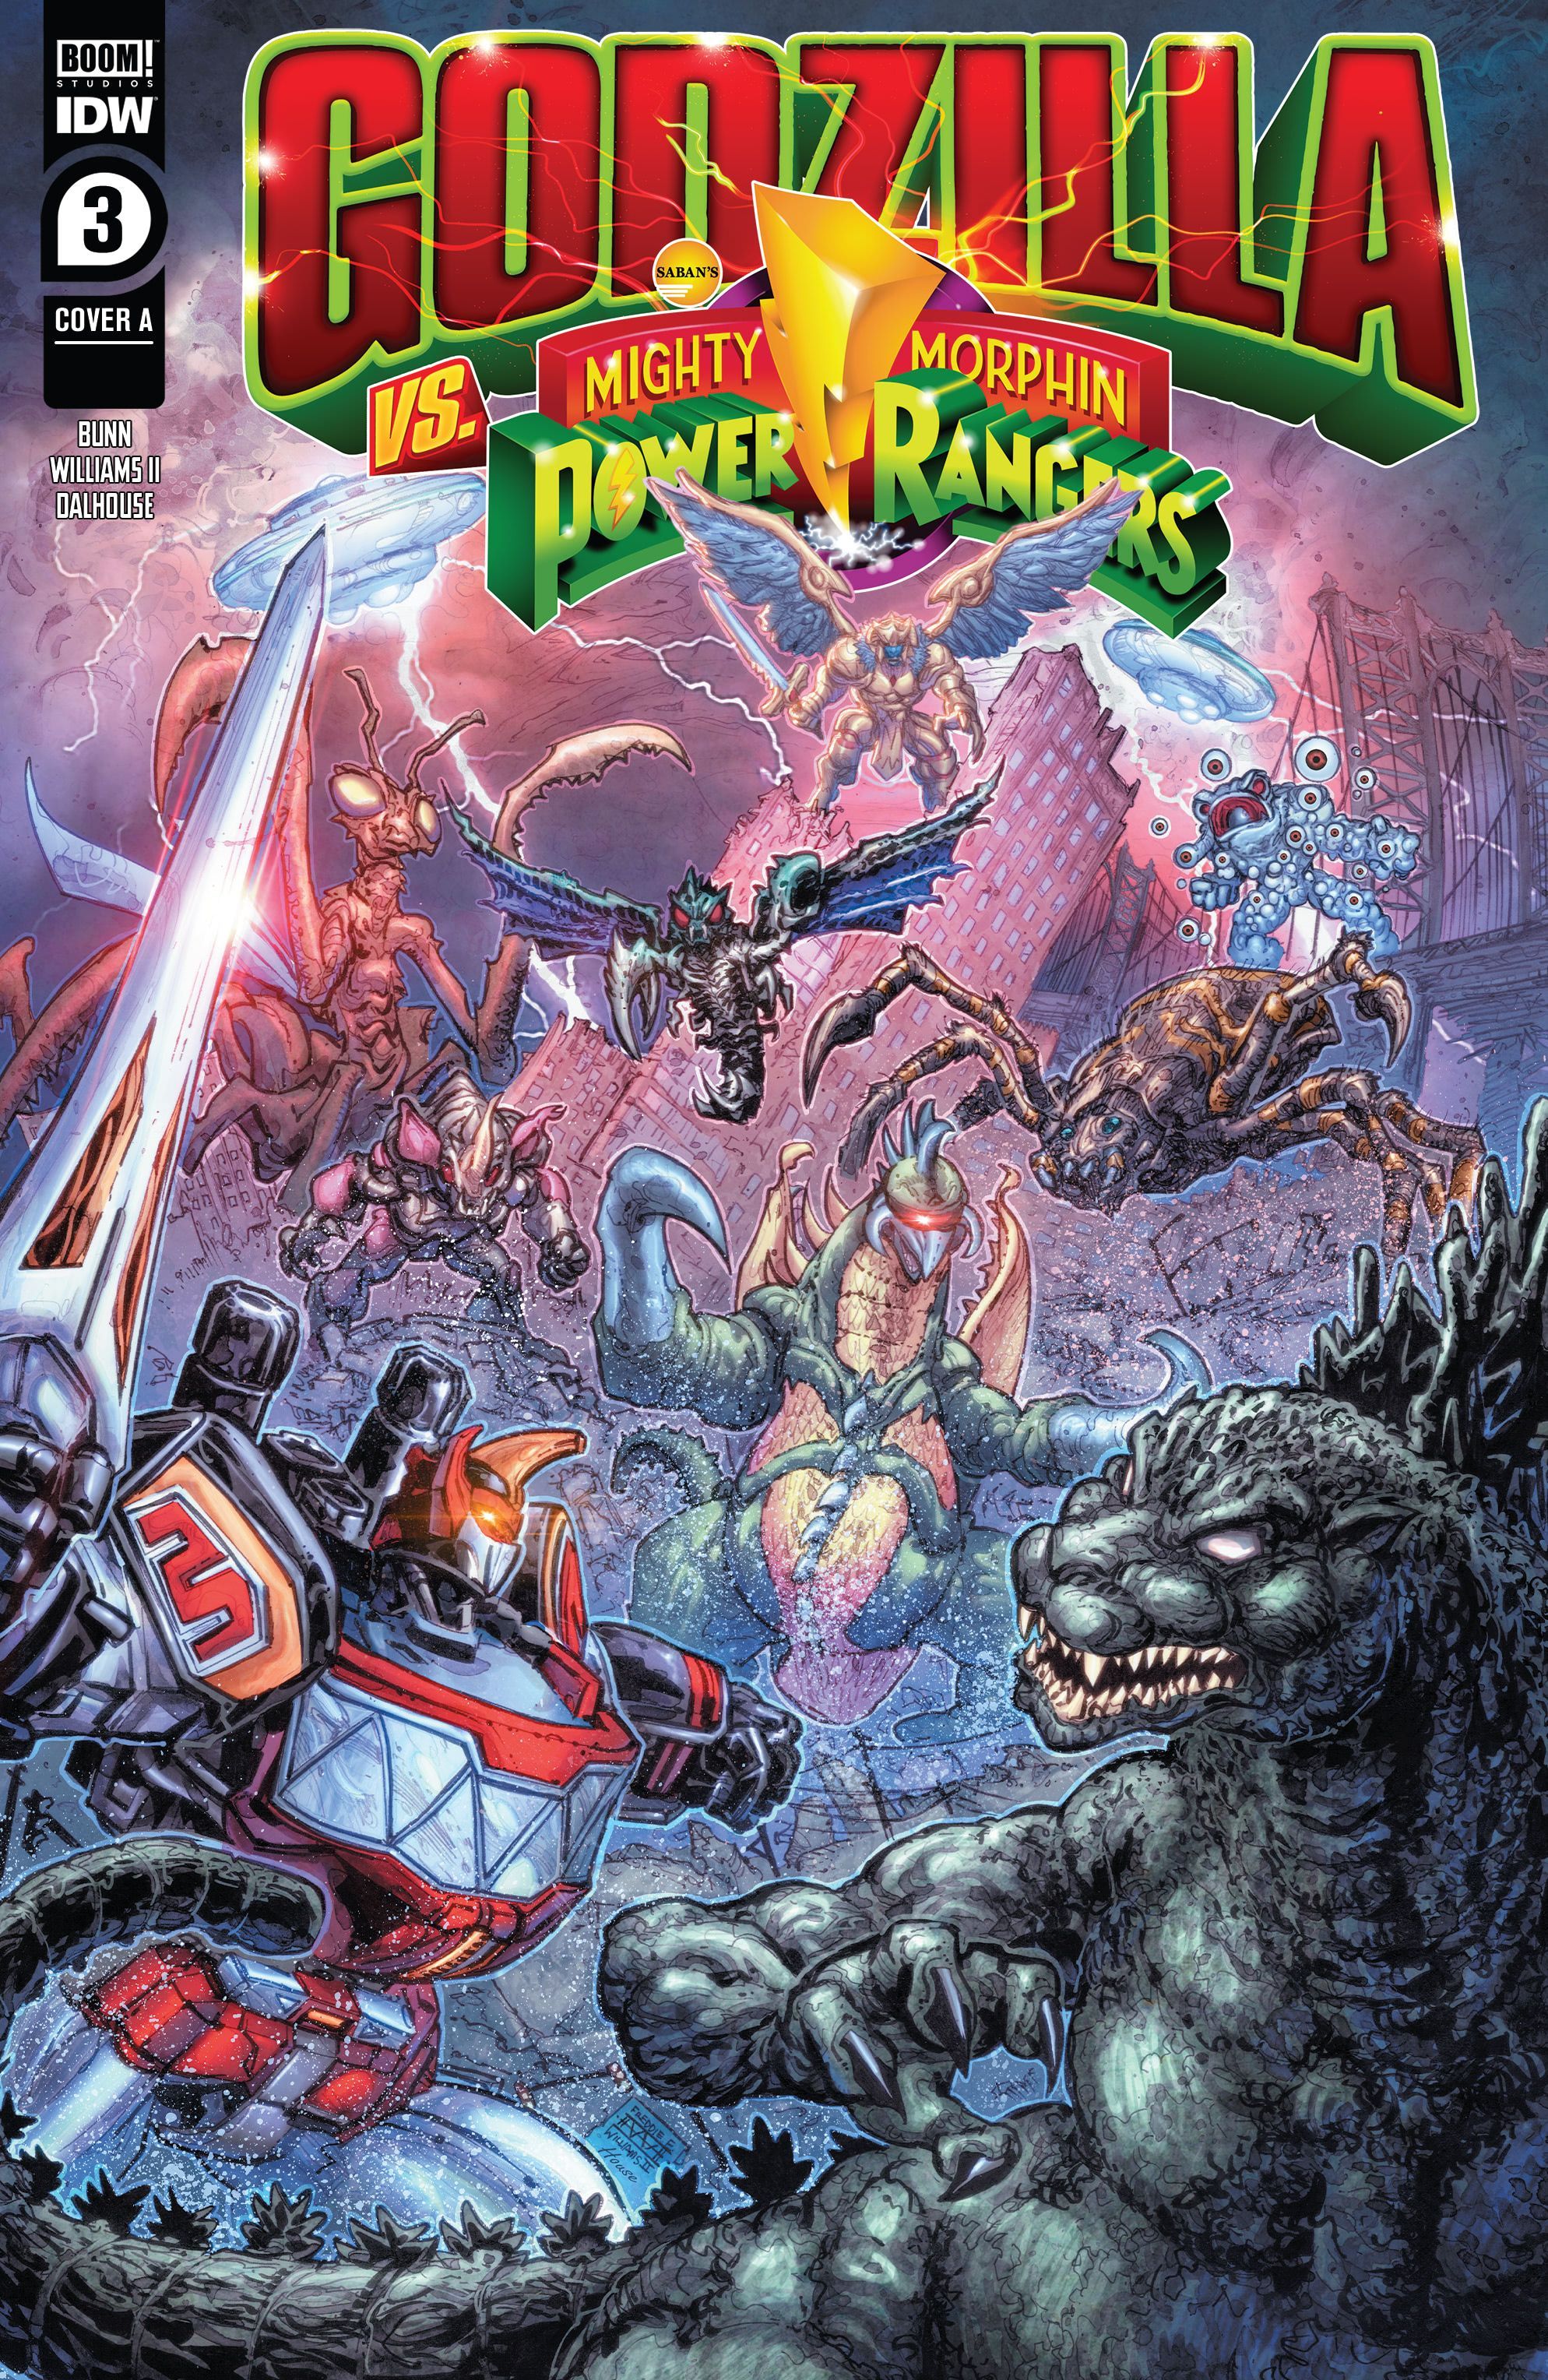 Godzilla-vs-The-Mighty-Morphin-Power-Rangers-3-Cover-1